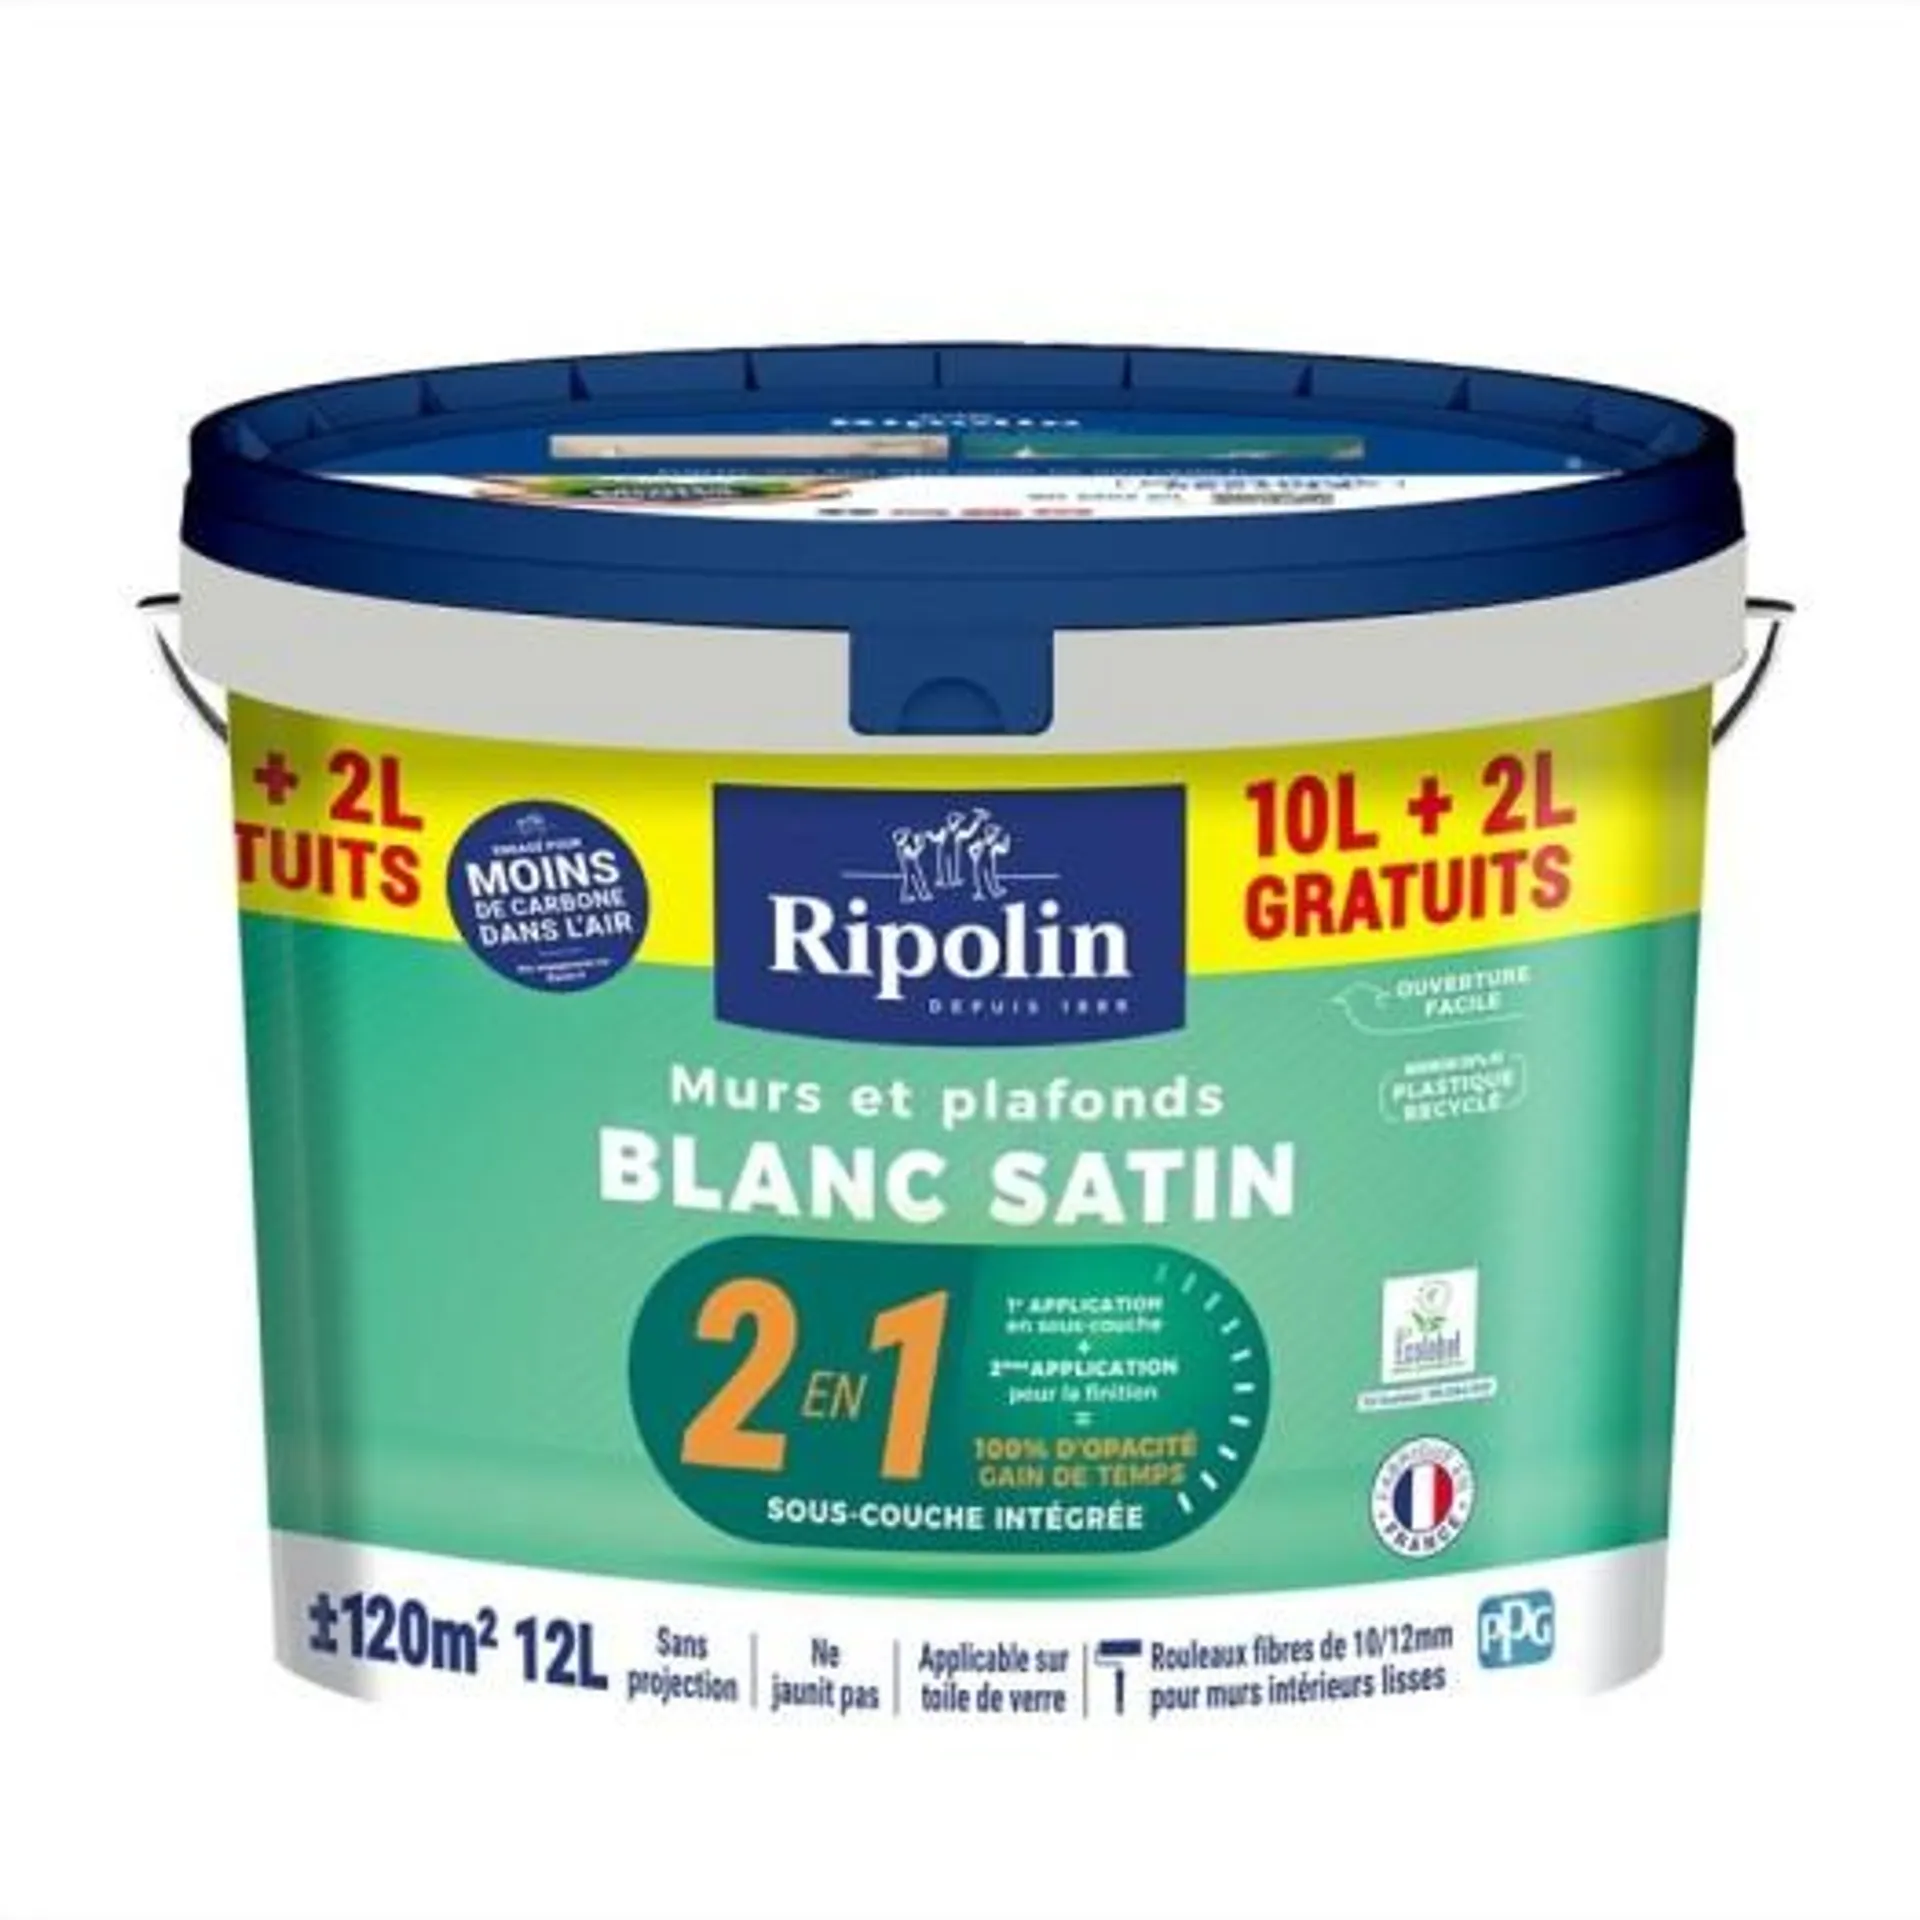 Peinture Ripolin murs et plafonds 2 en 1 sous-couche intégrée blanc satin 12L